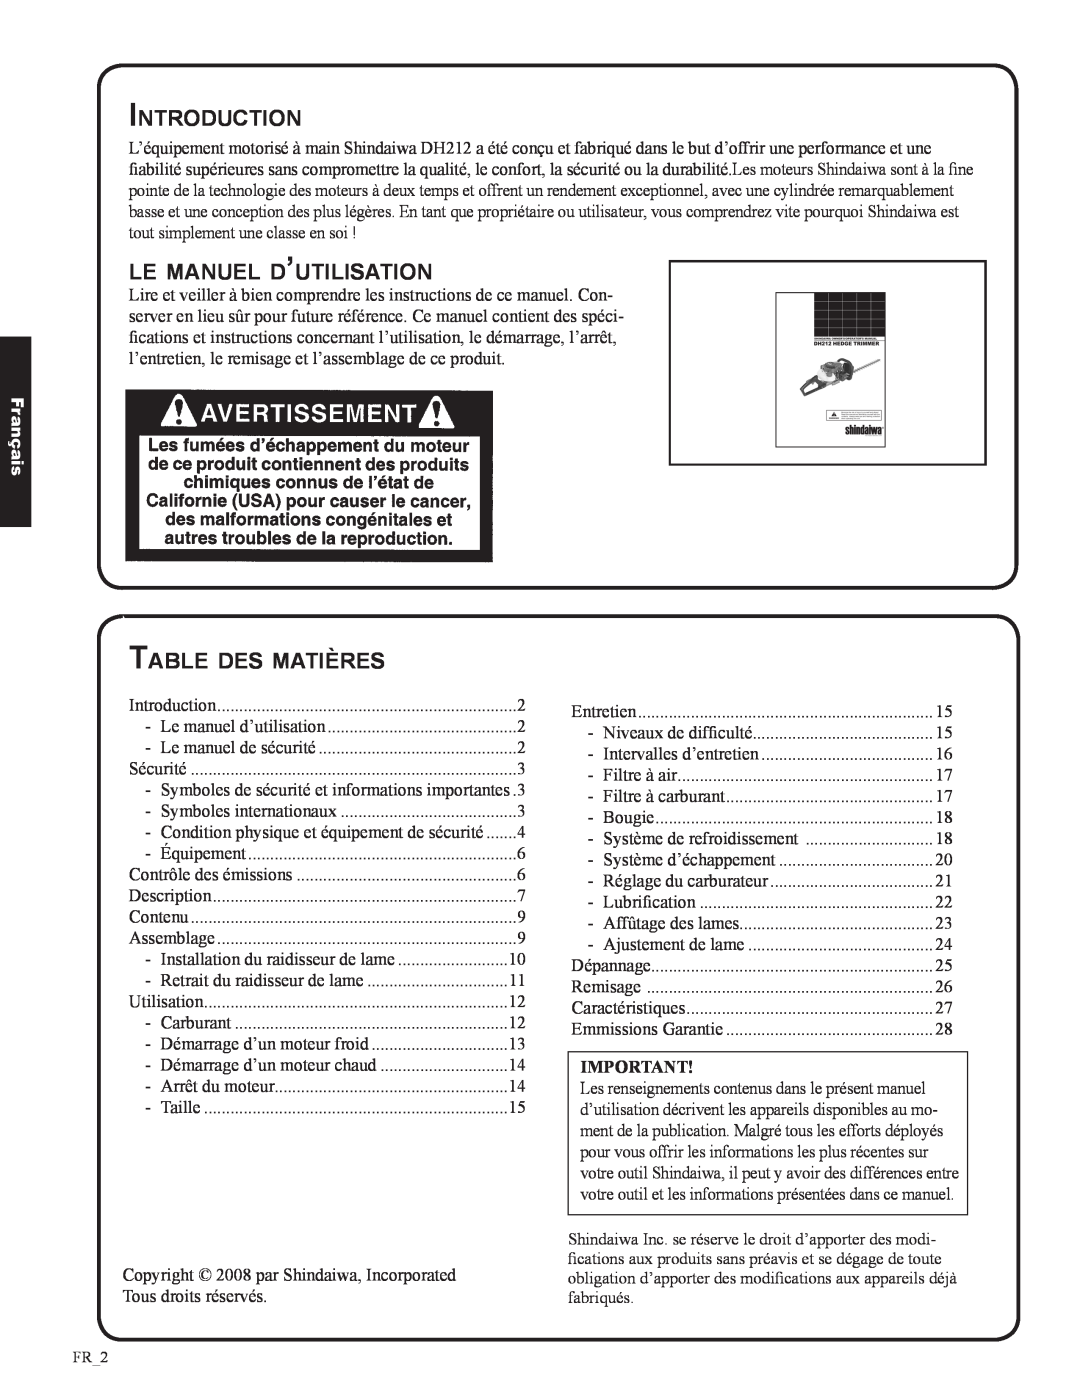 Shindaiwa DH212, 82053 manual le manuel d’utilisation, Table des matières, Français, Introduction 